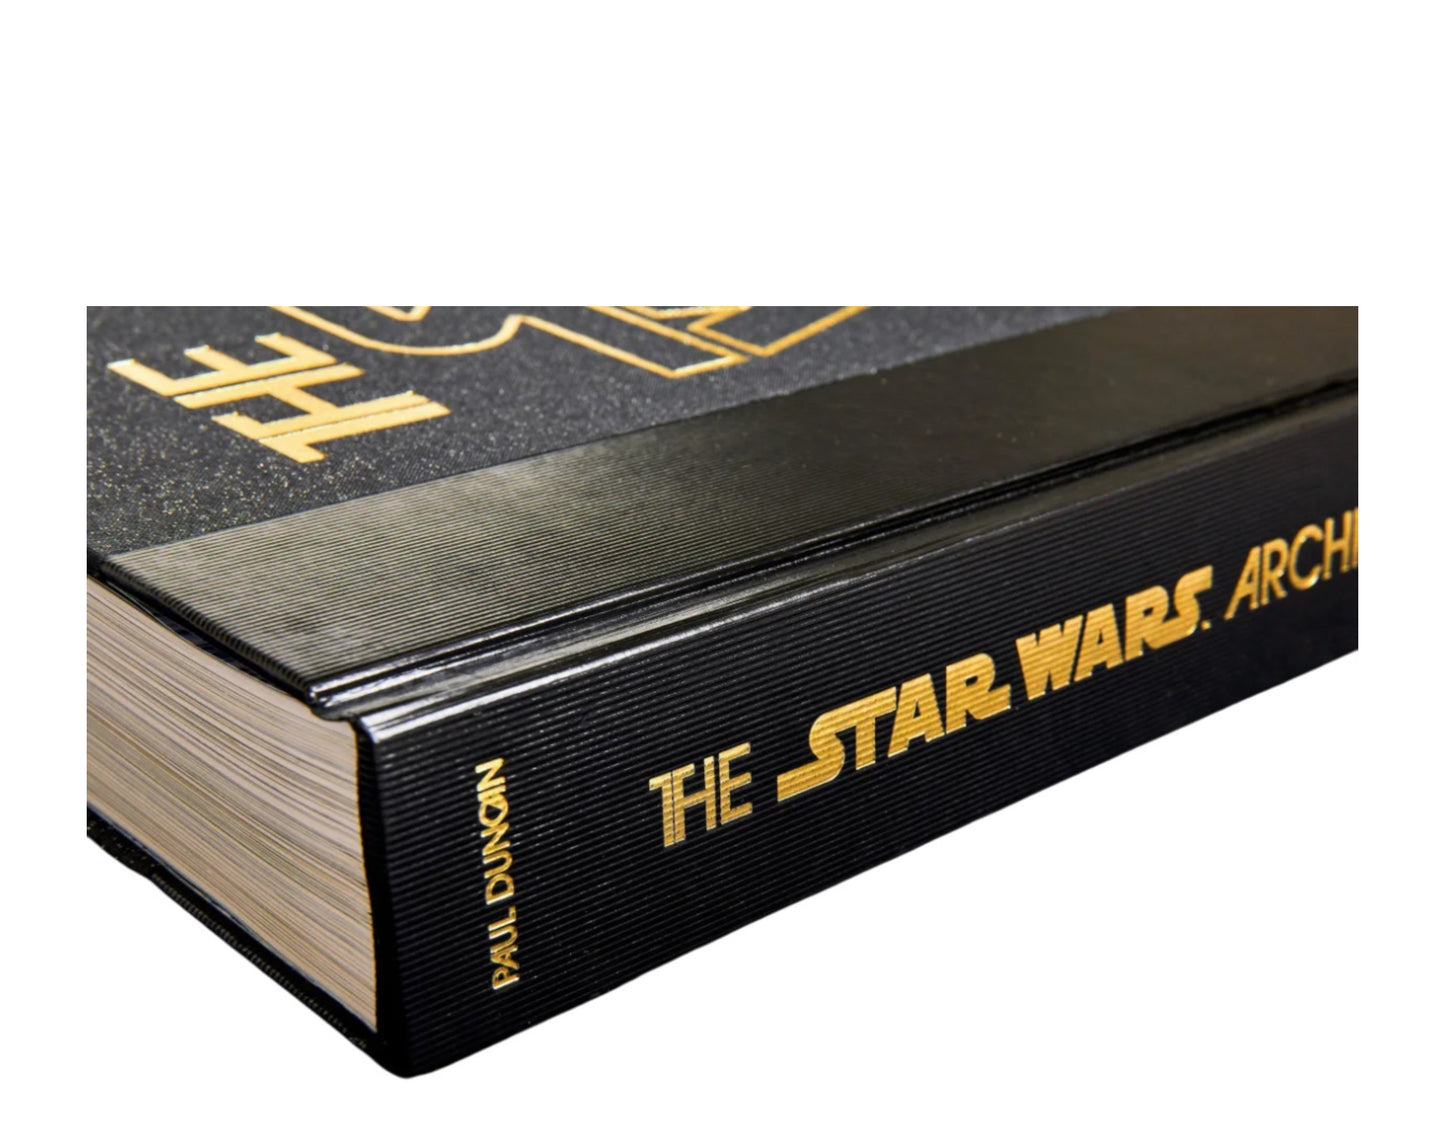 Taschen Books - The Star Wars Archives. 1977–1983 Hardcover Book XXL